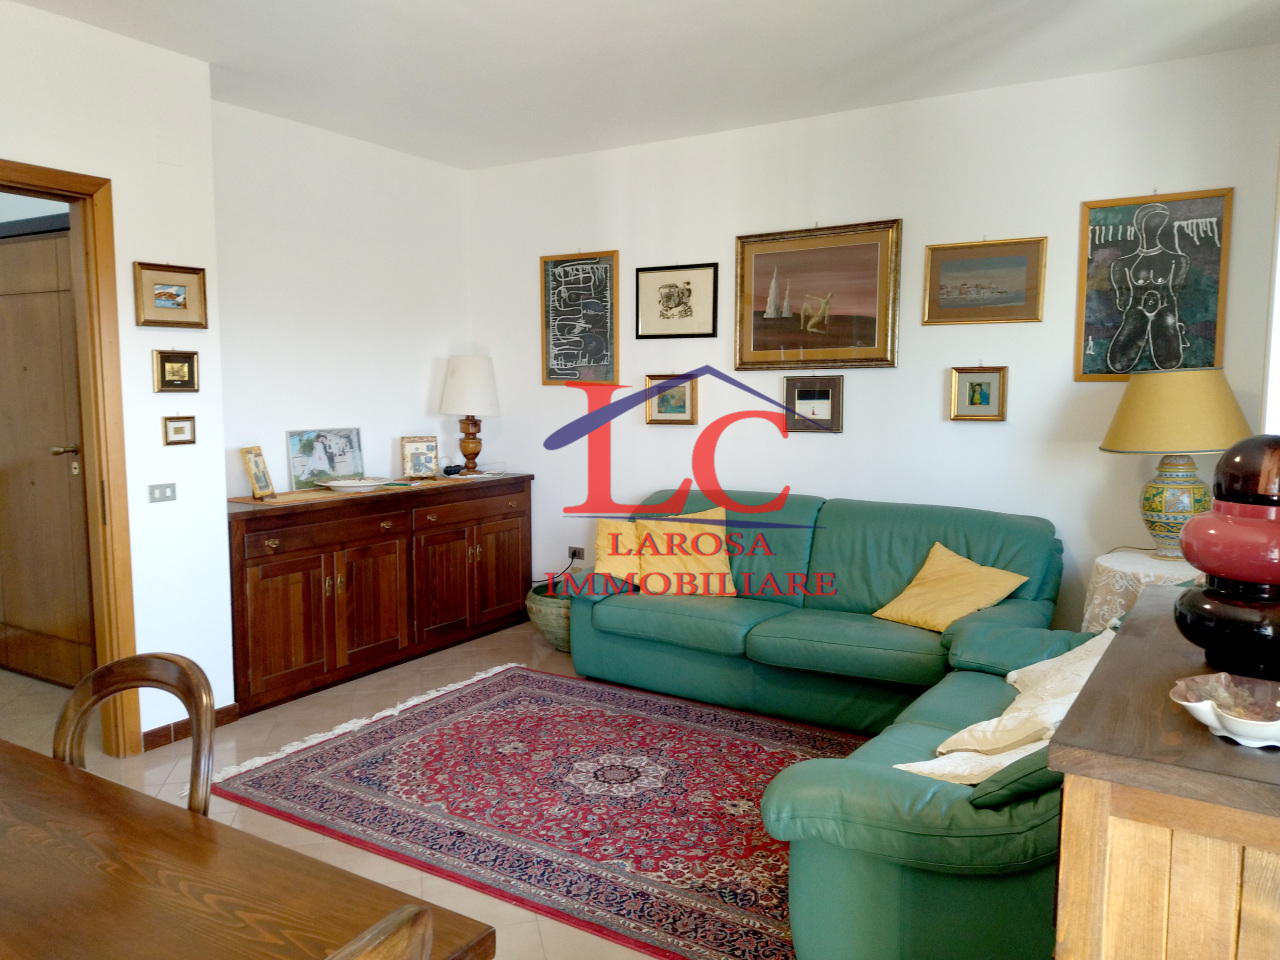 Appartamento in vendita a Lecce, 7 locali, prezzo € 130.000 | PortaleAgenzieImmobiliari.it